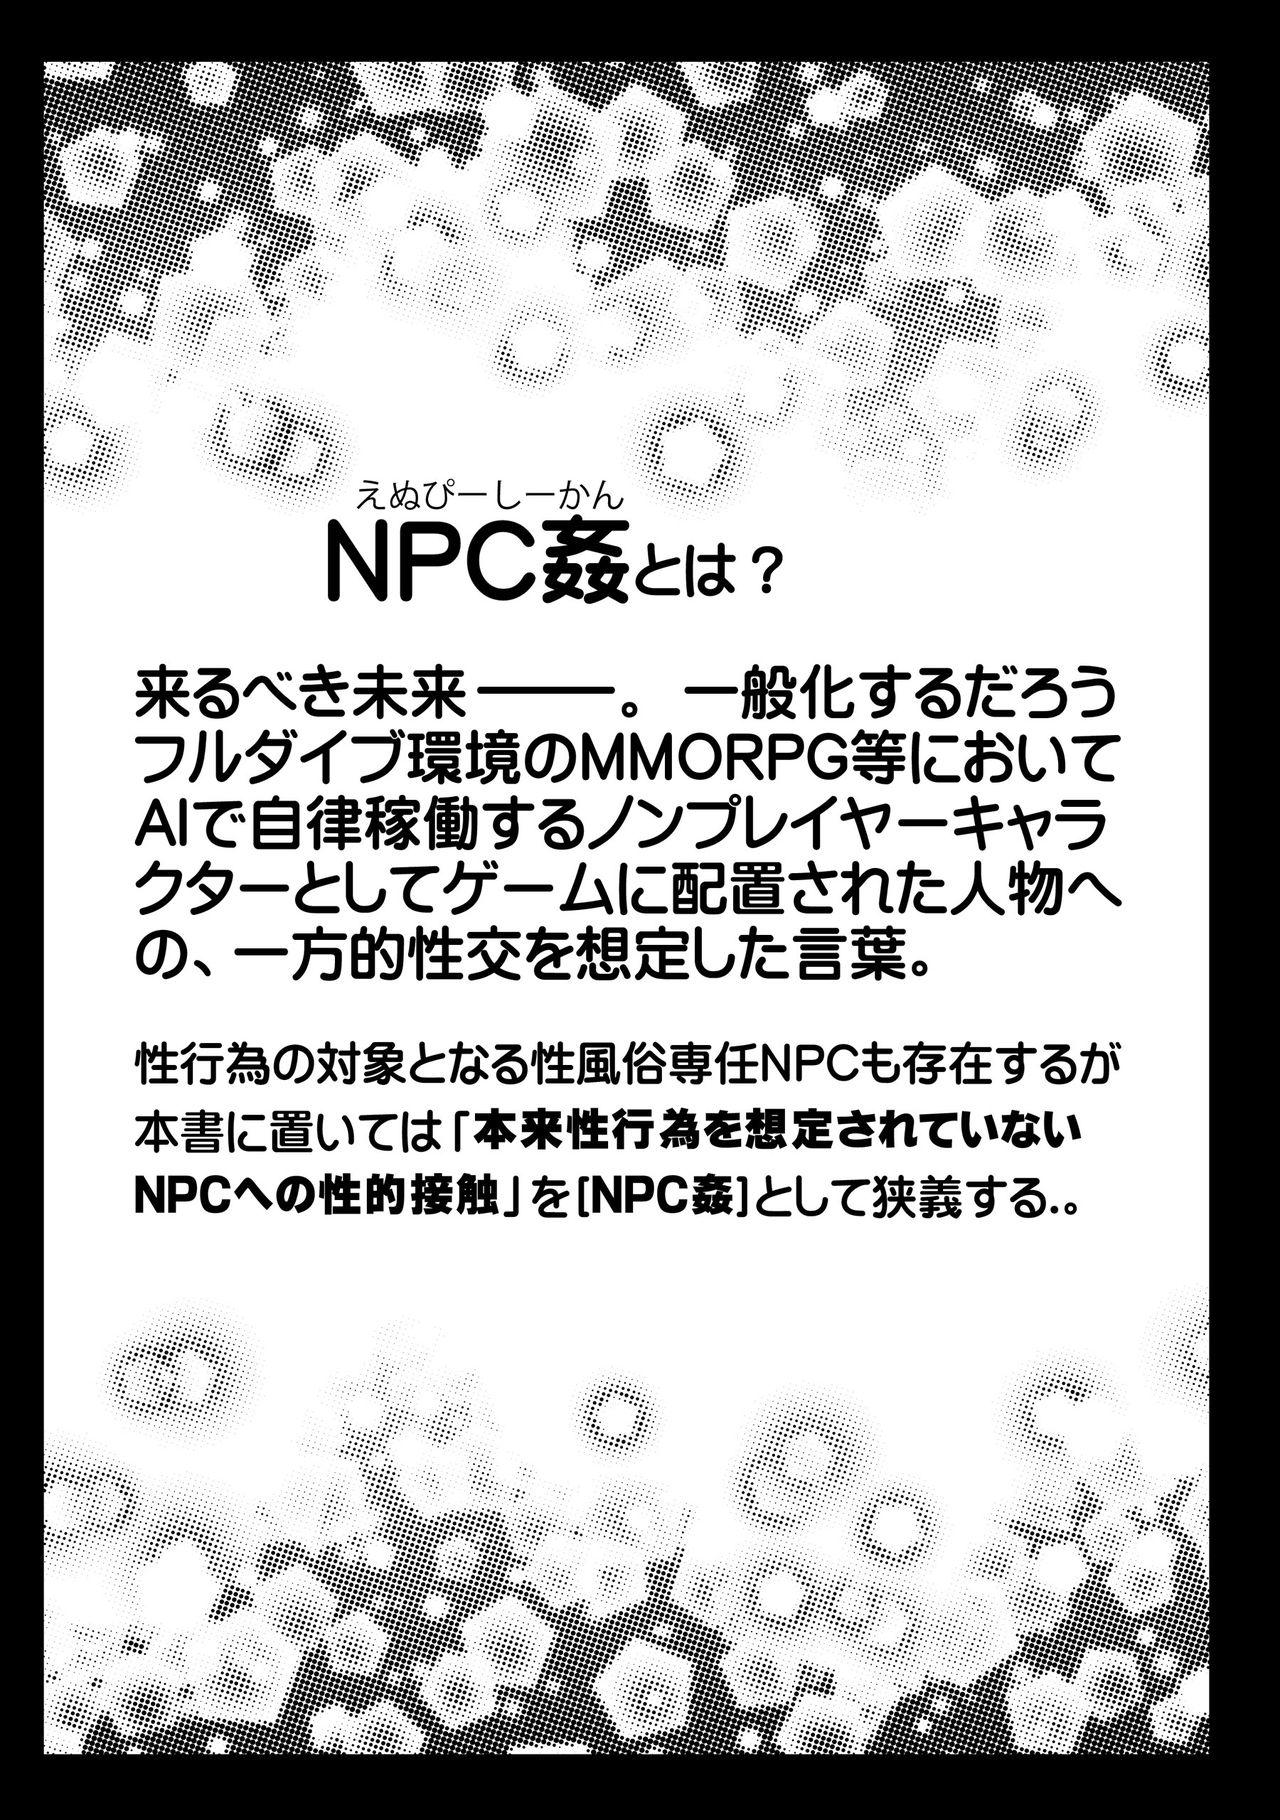 NPCFxxK! 1